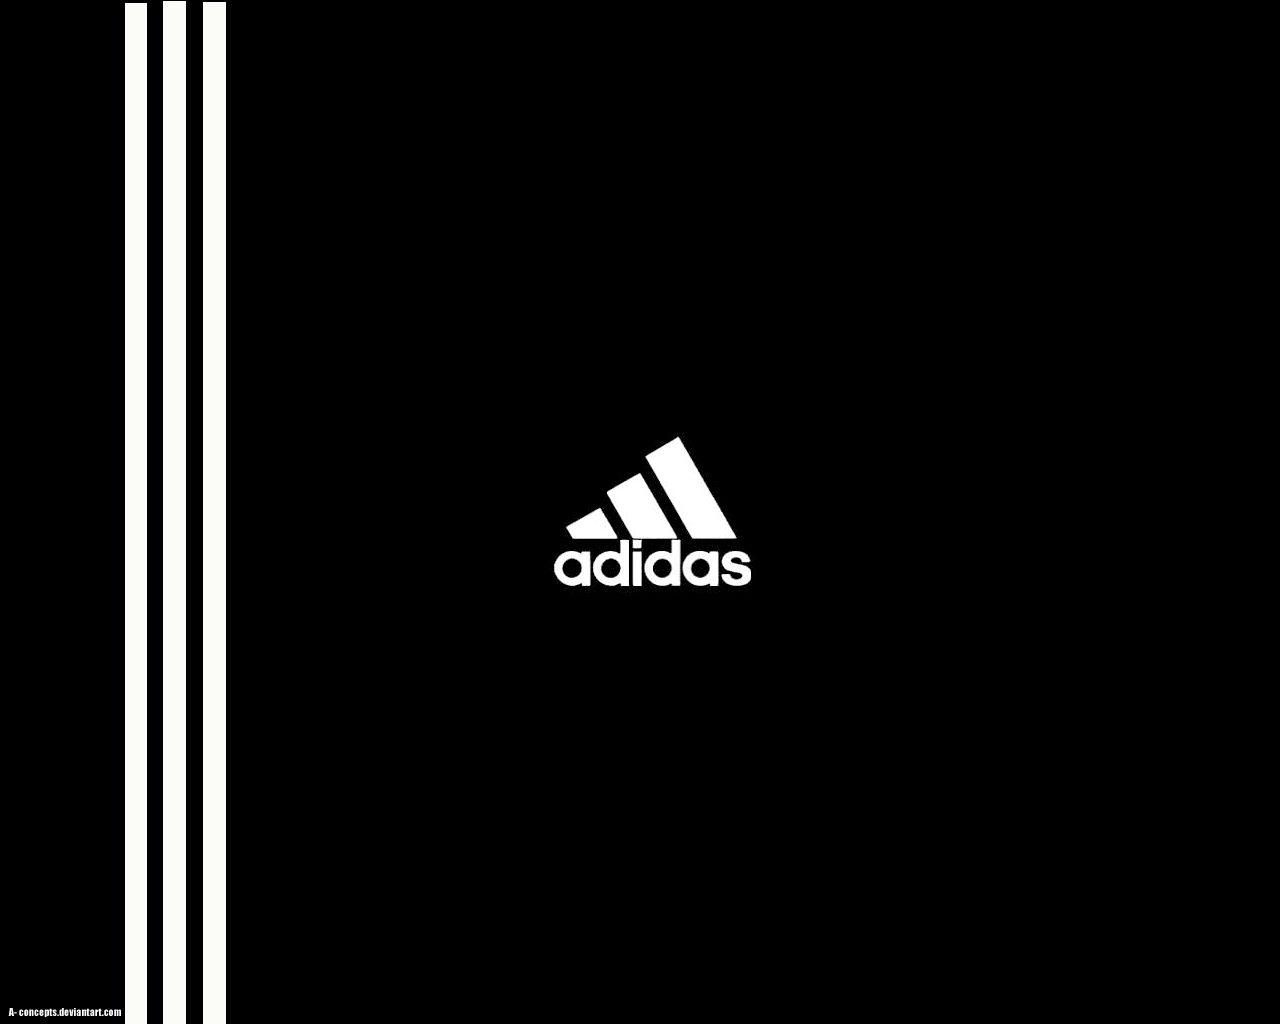 Adidas 3 Stripe Logo Wallpapers On Wallpaperdog